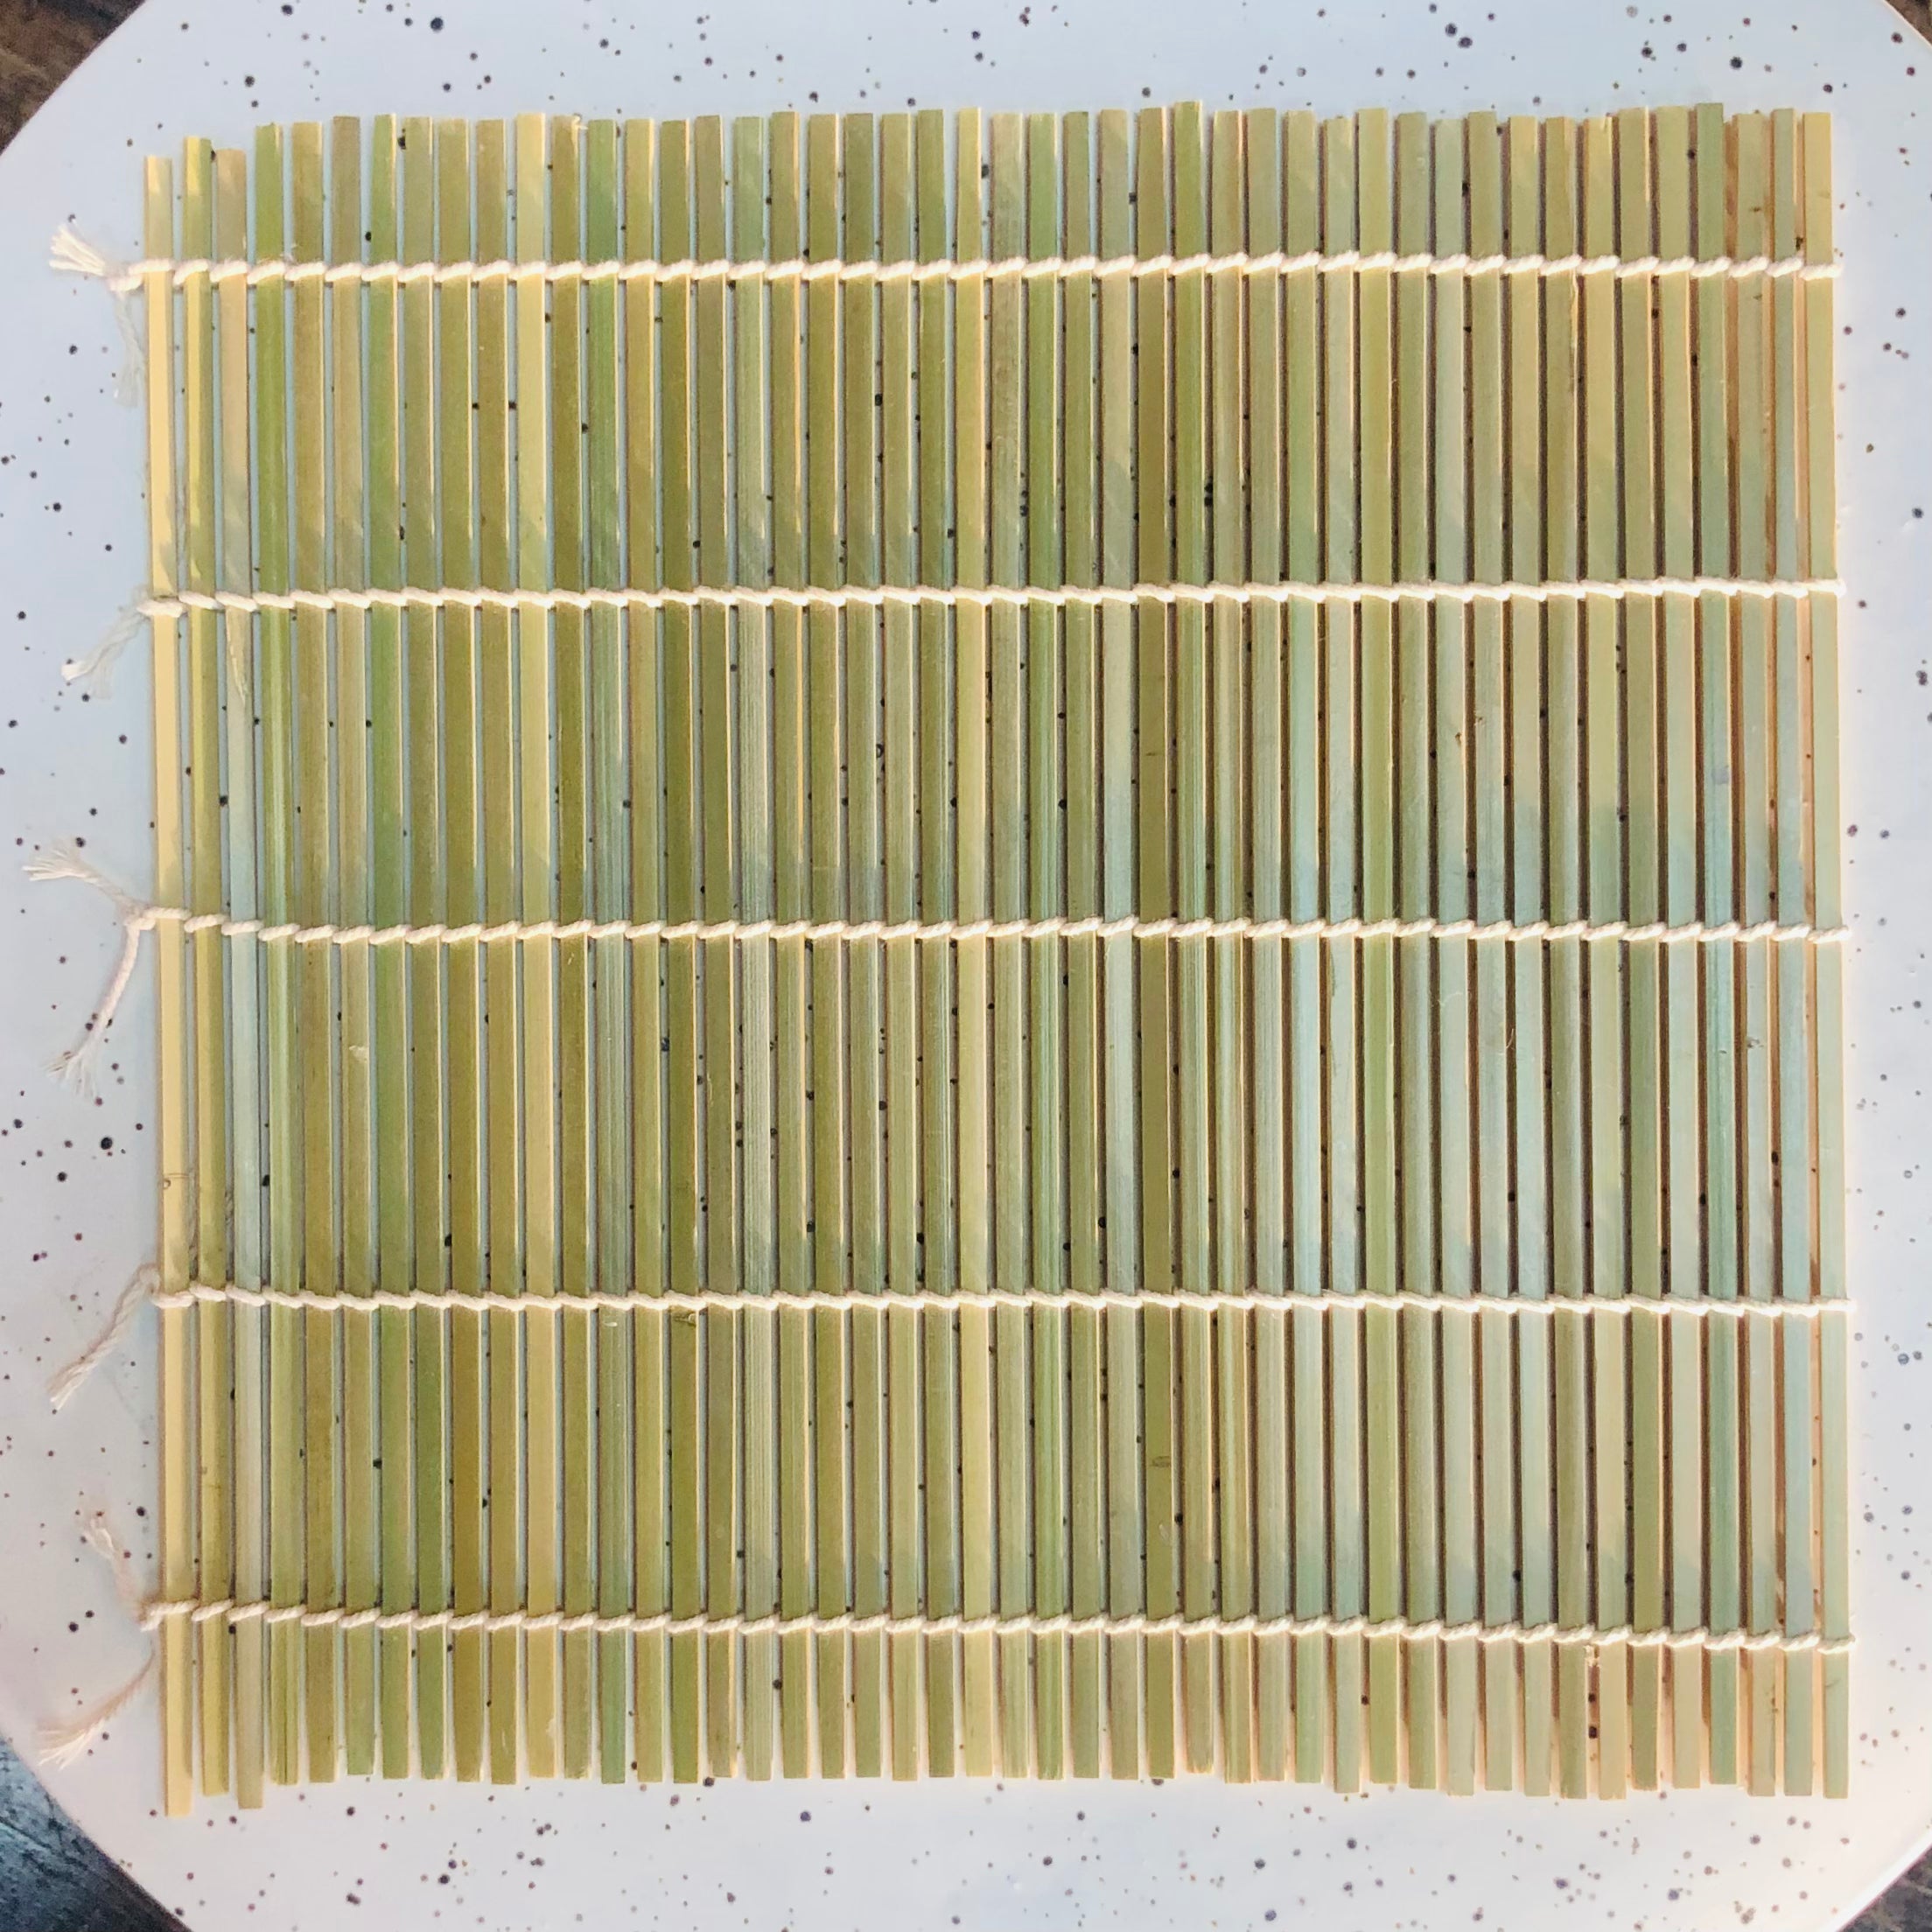 Square Natural Bamboo Sushi Mat - 10 1/2 x 10 1/2 - 1 count box